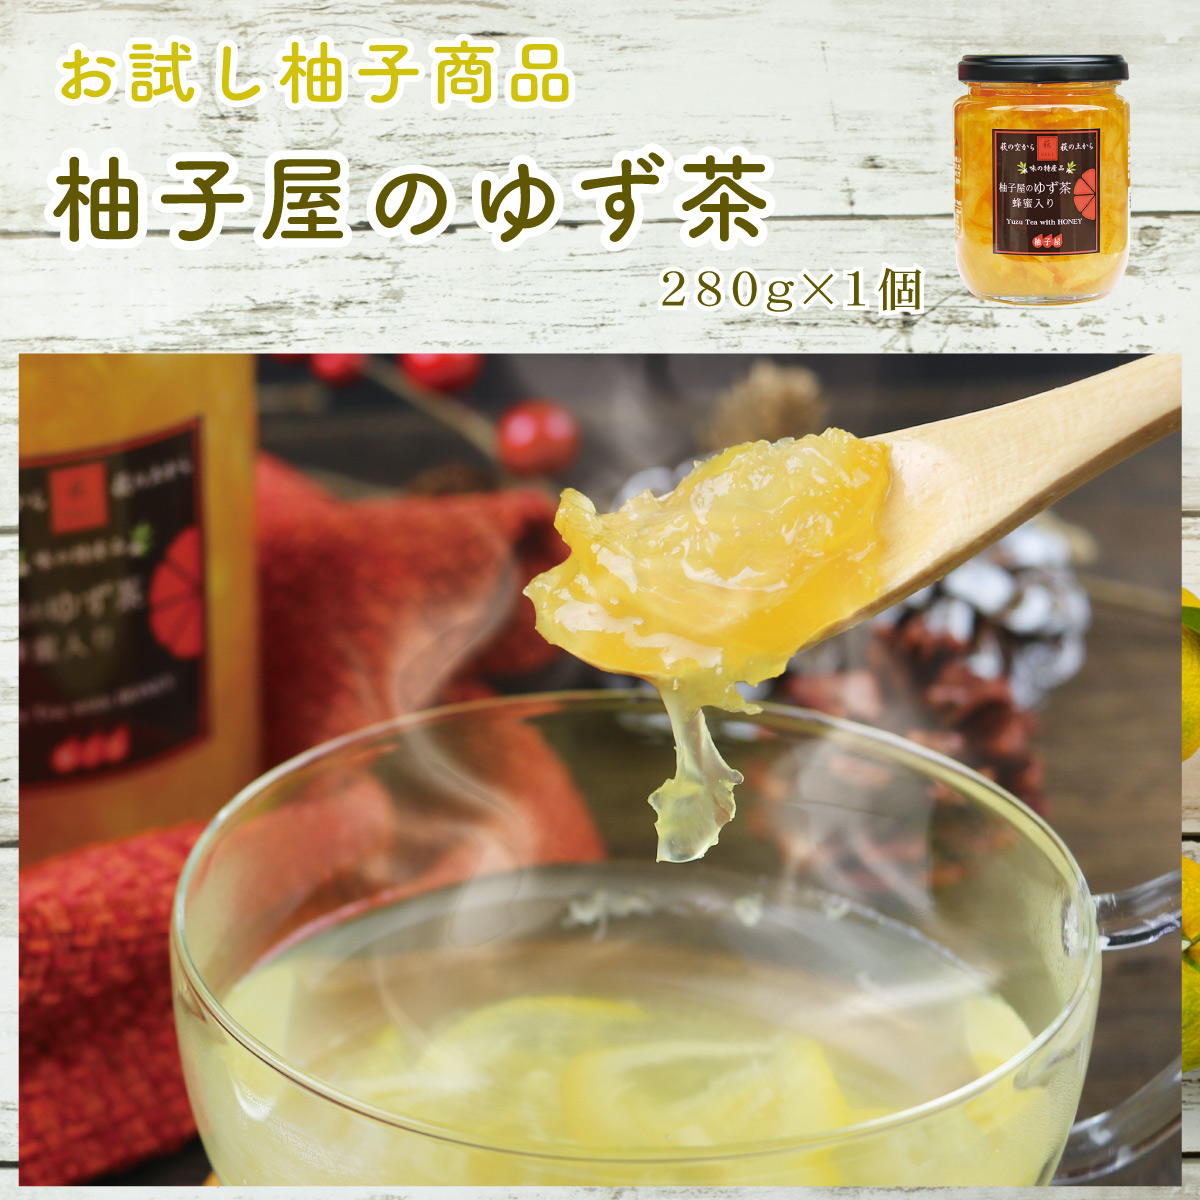 柚子屋のゆず茶のイメージ画像